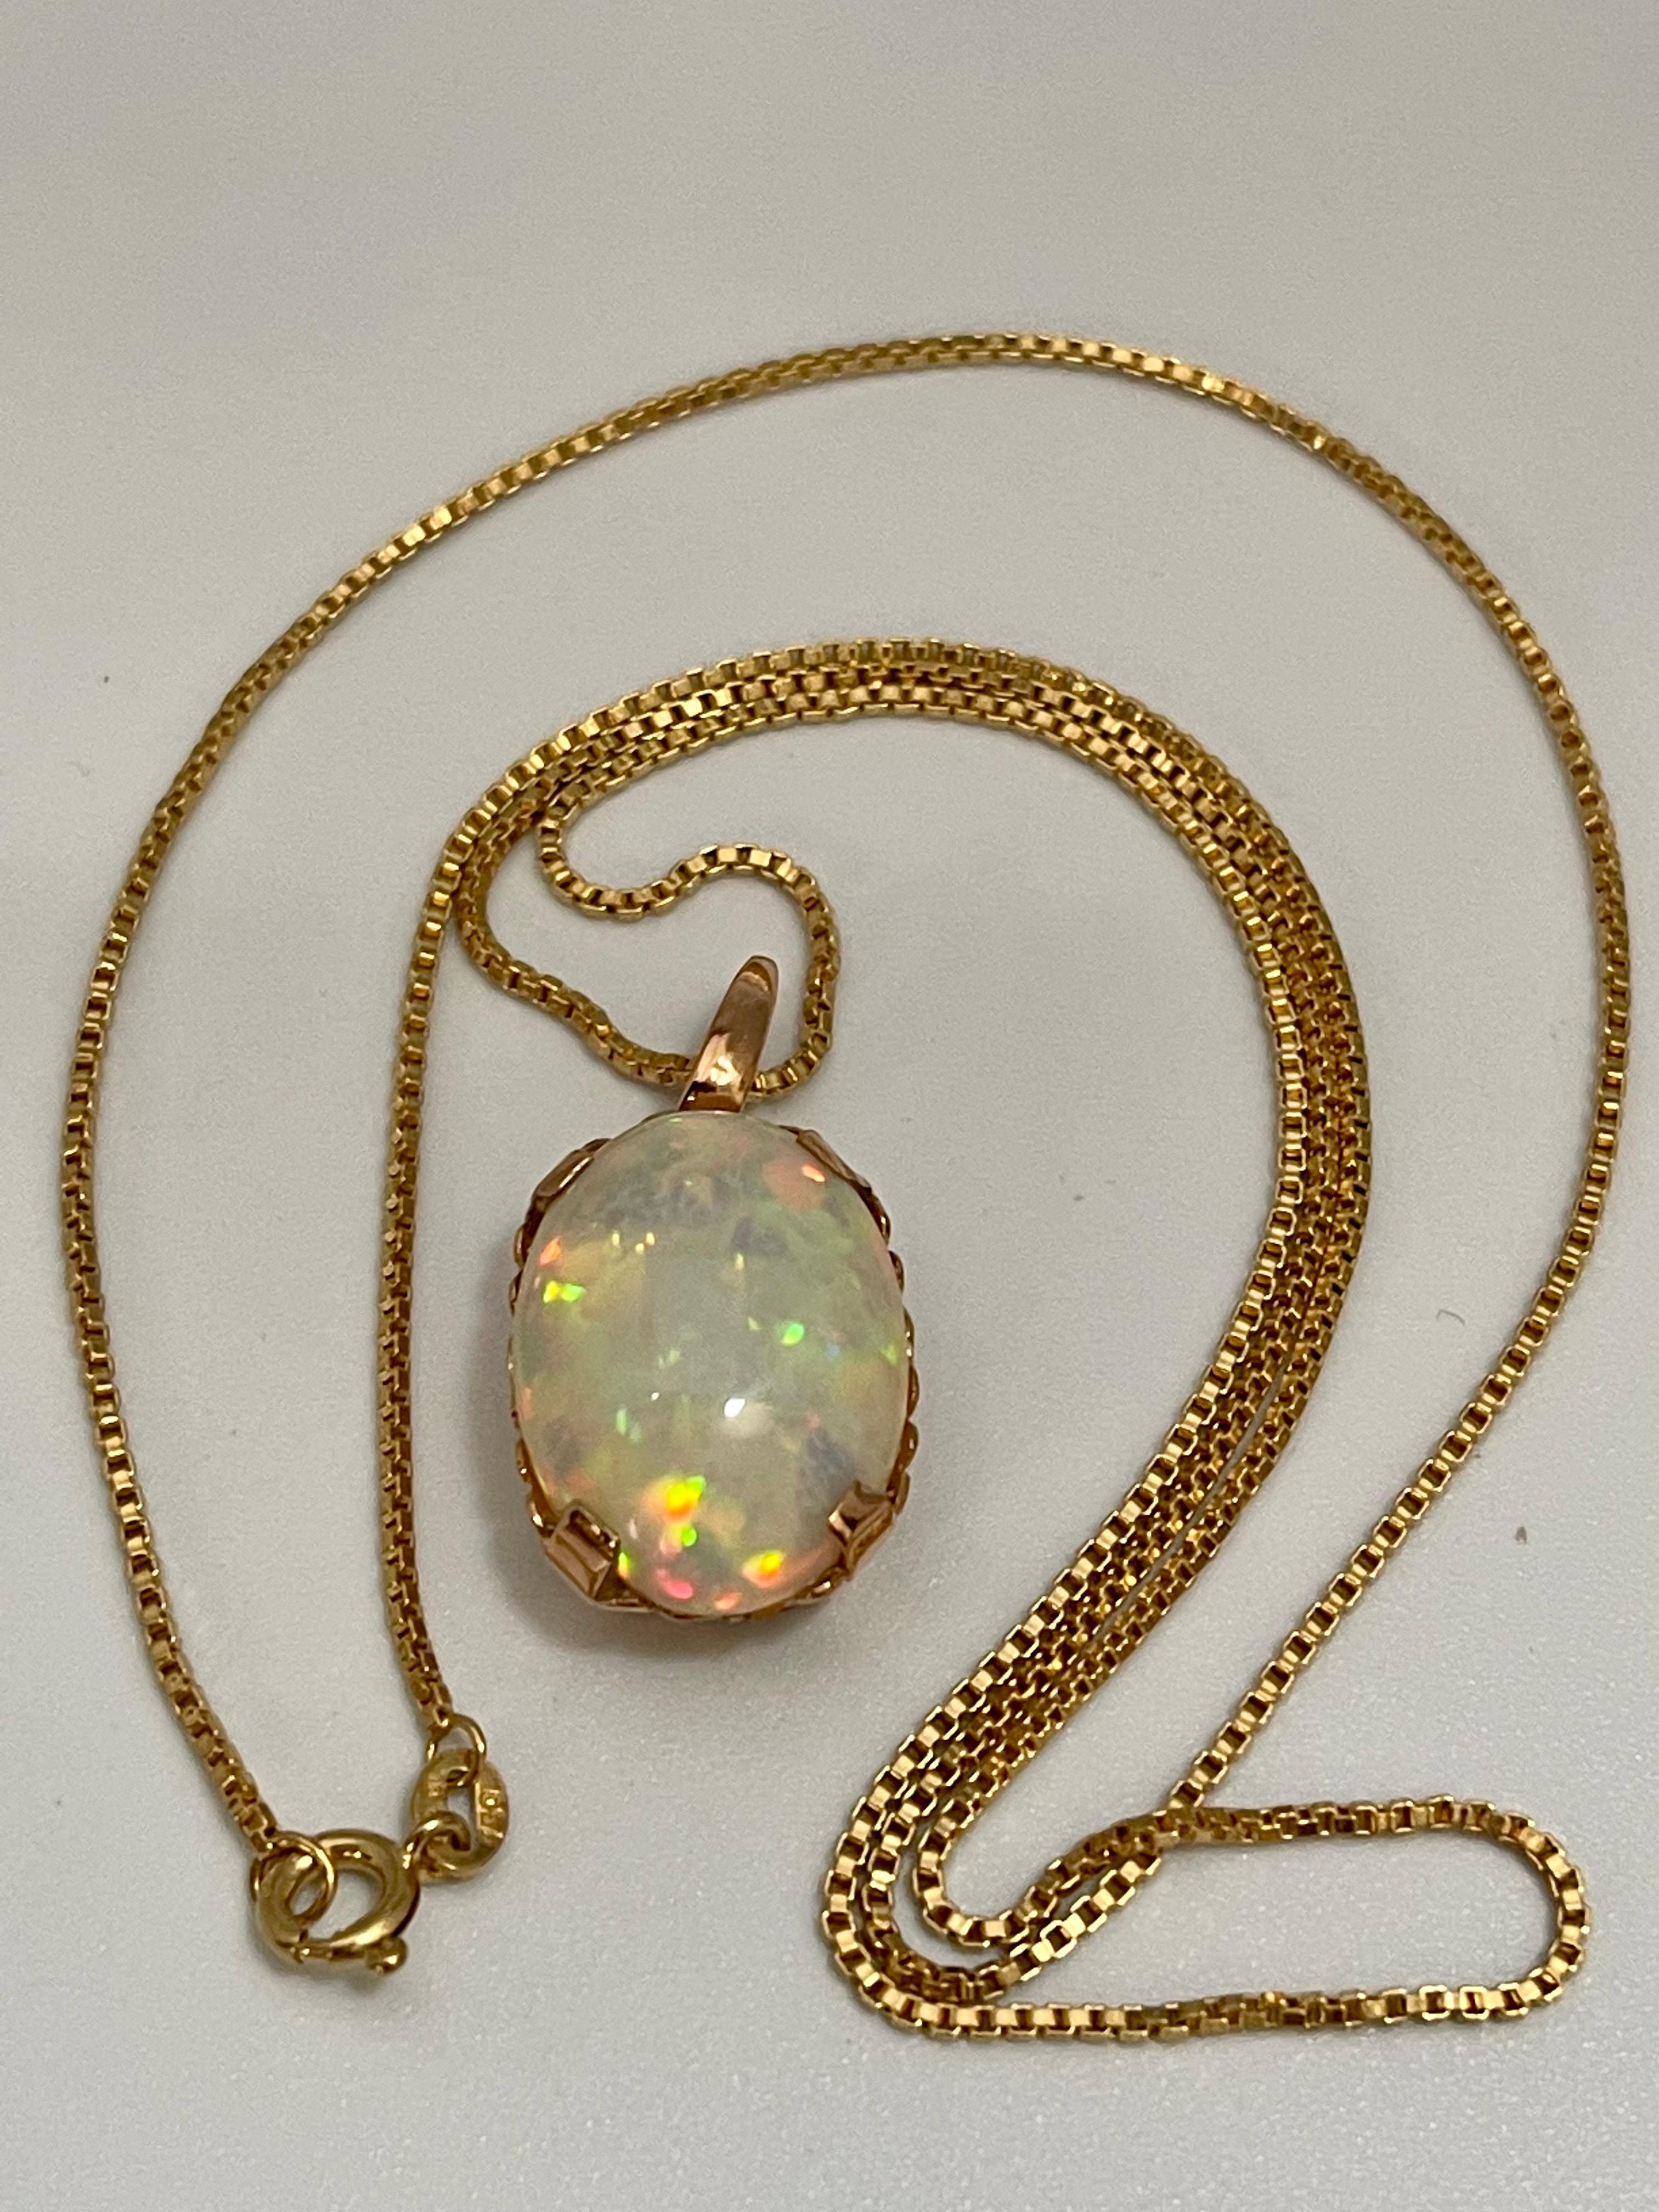 9 Carat Oval Ethiopian Opal Pendant / Necklace 18 Karat + 18 Kt Gold Chain 5